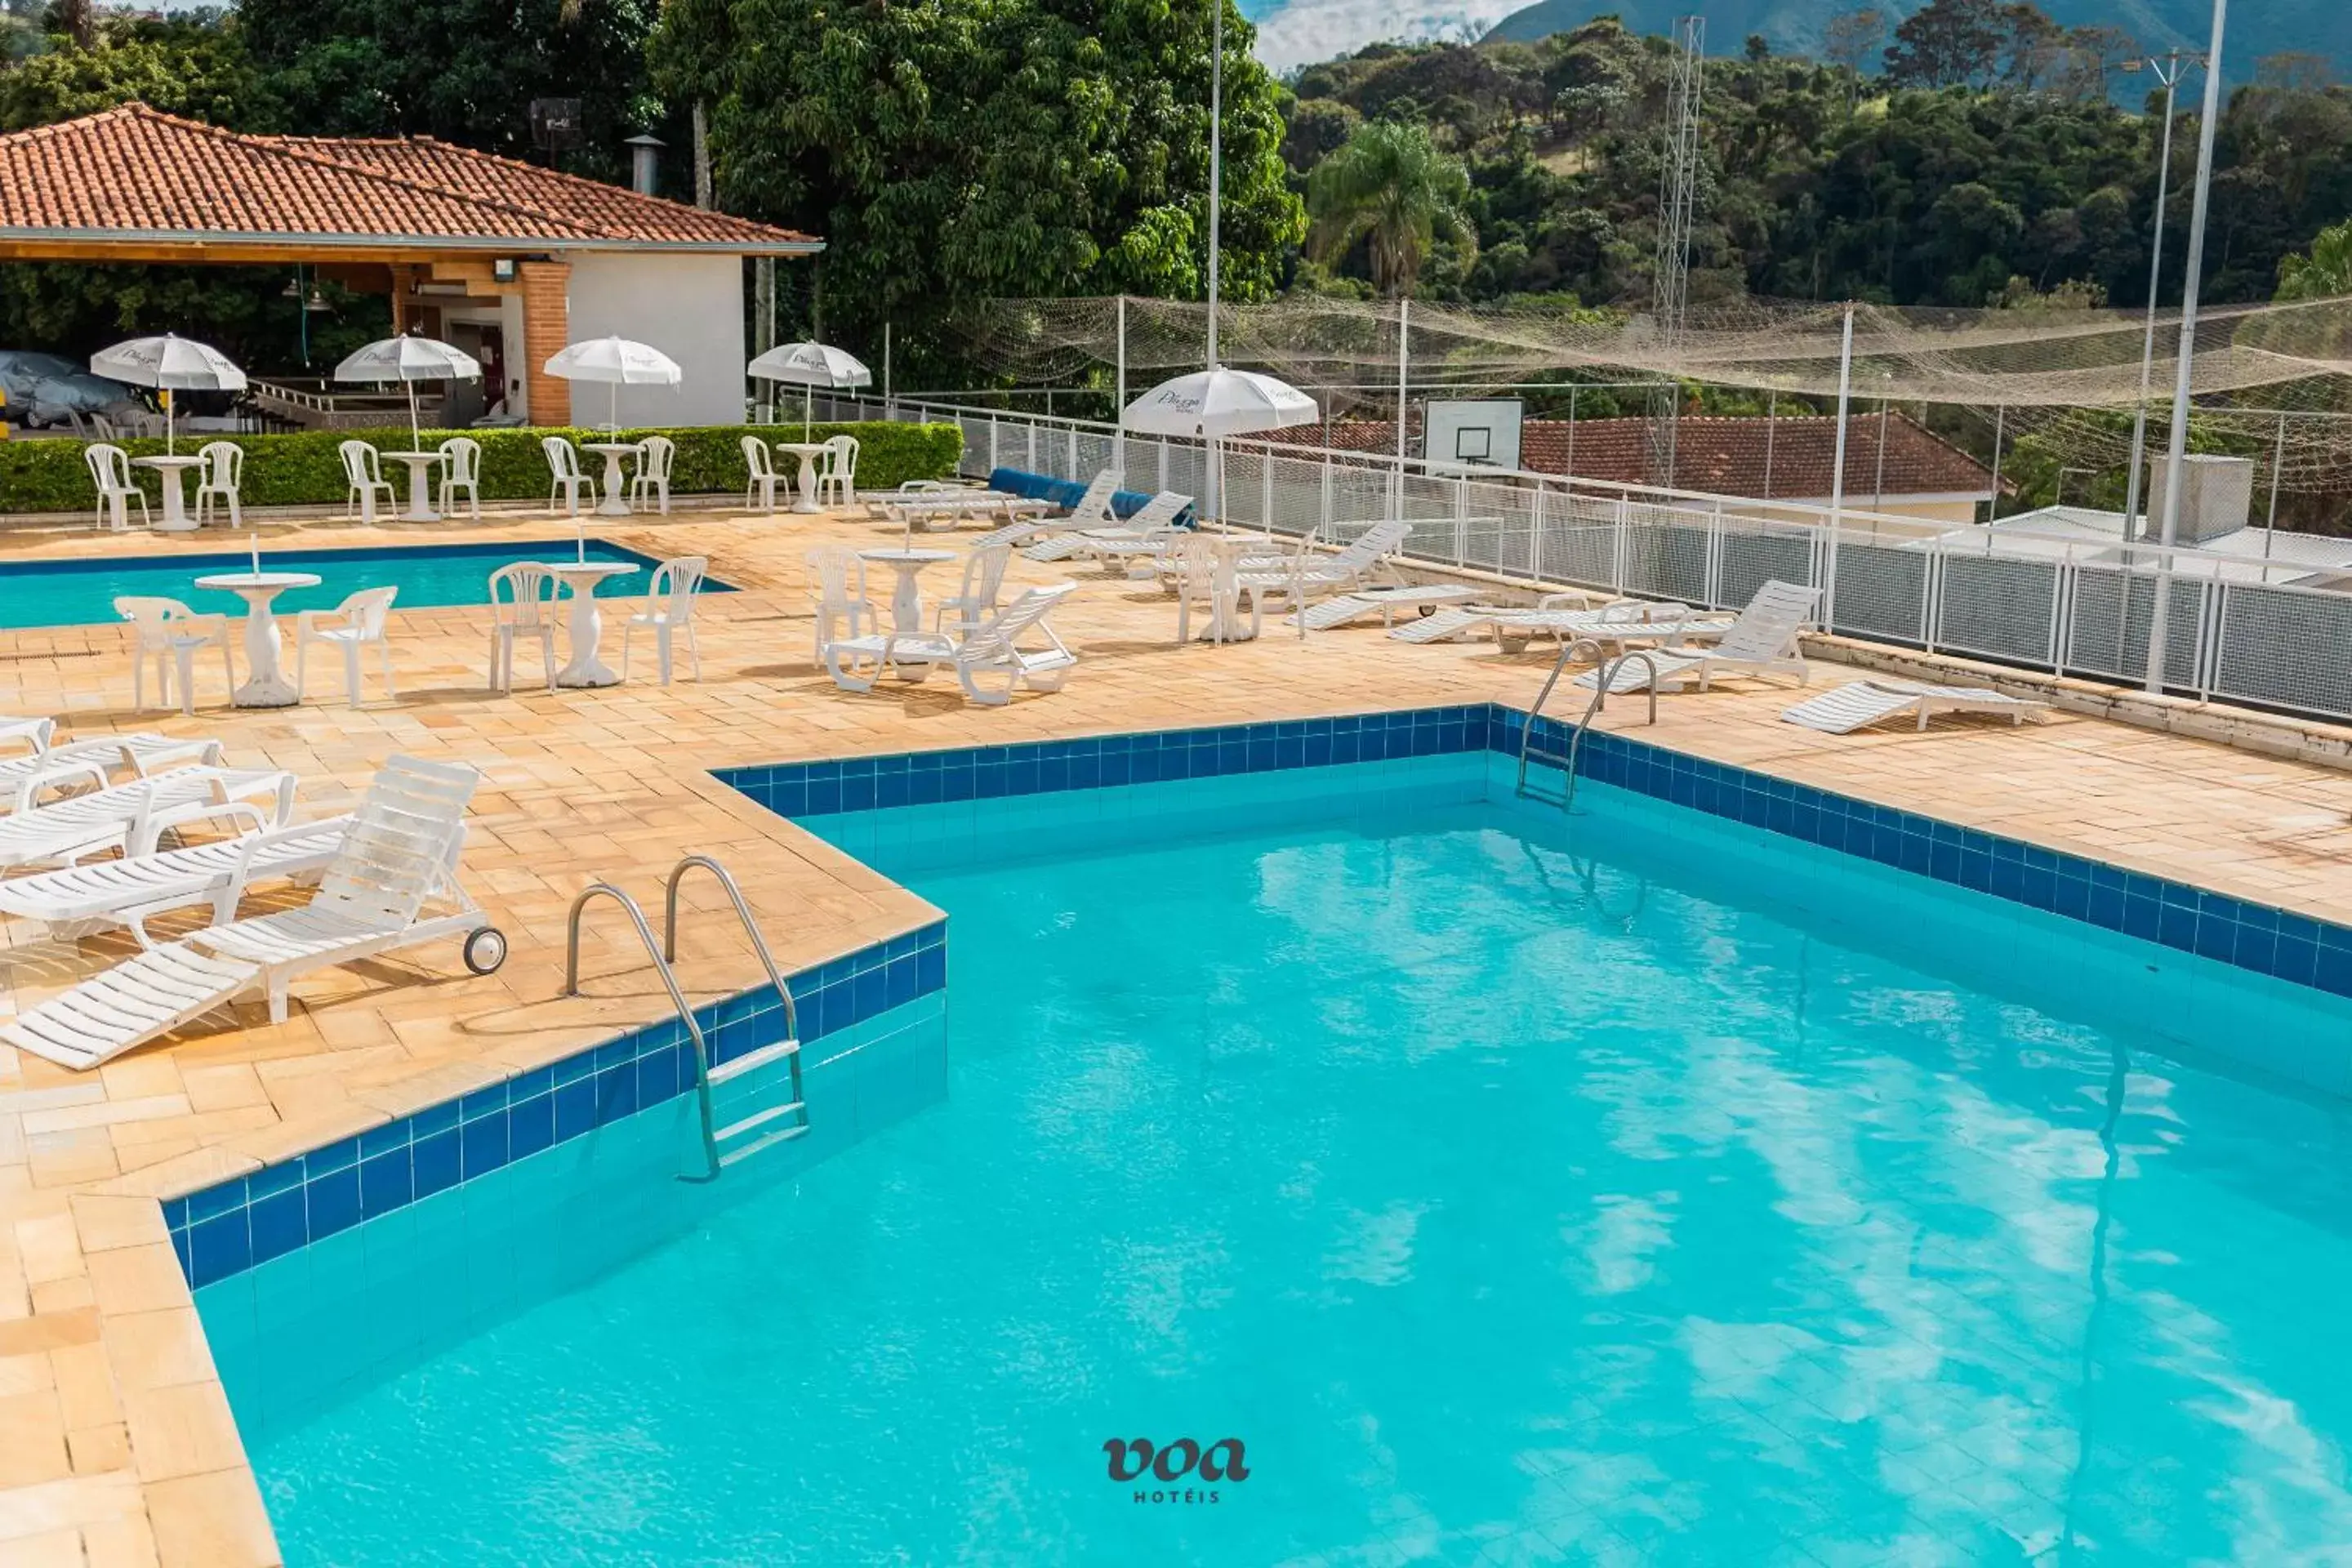 Day, Swimming Pool in VOA Plazza Hotel